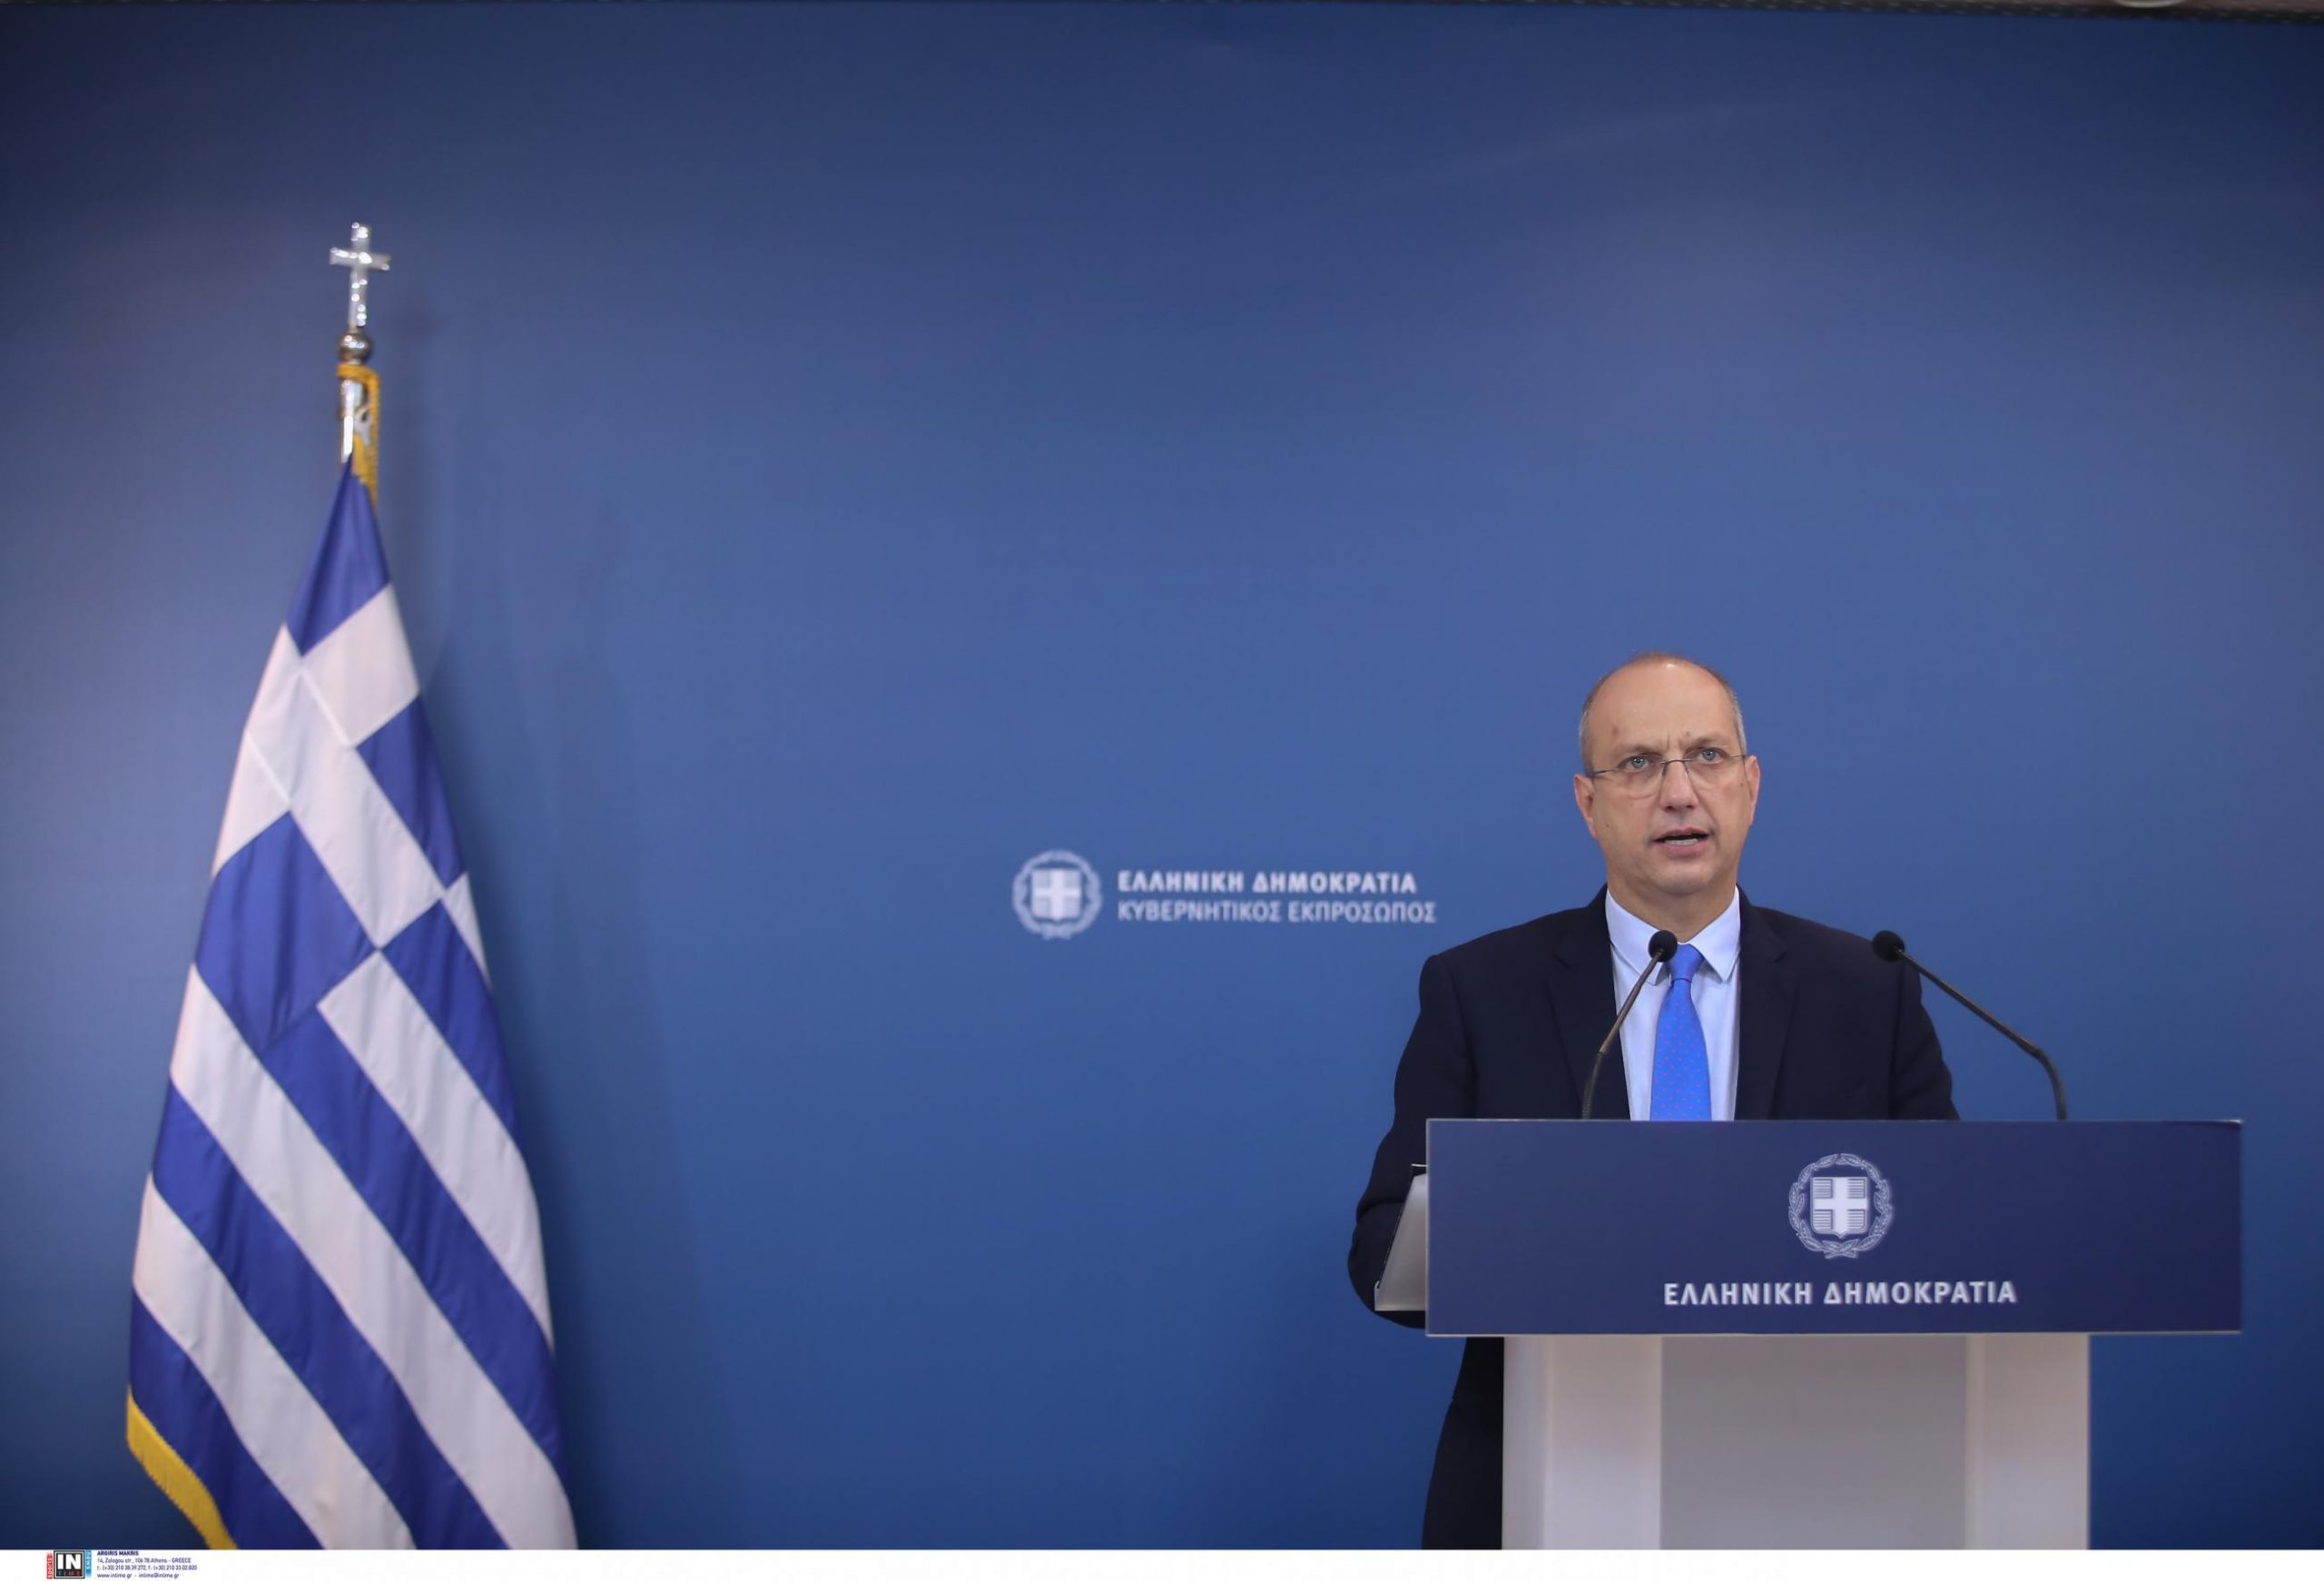 Οικονόμου: 230 έργα με προϋπολογισμό 10,2 δισ. ευρώ θα υλοποιηθούν στο πλαίσιο του «Ελλάδα 2.0»